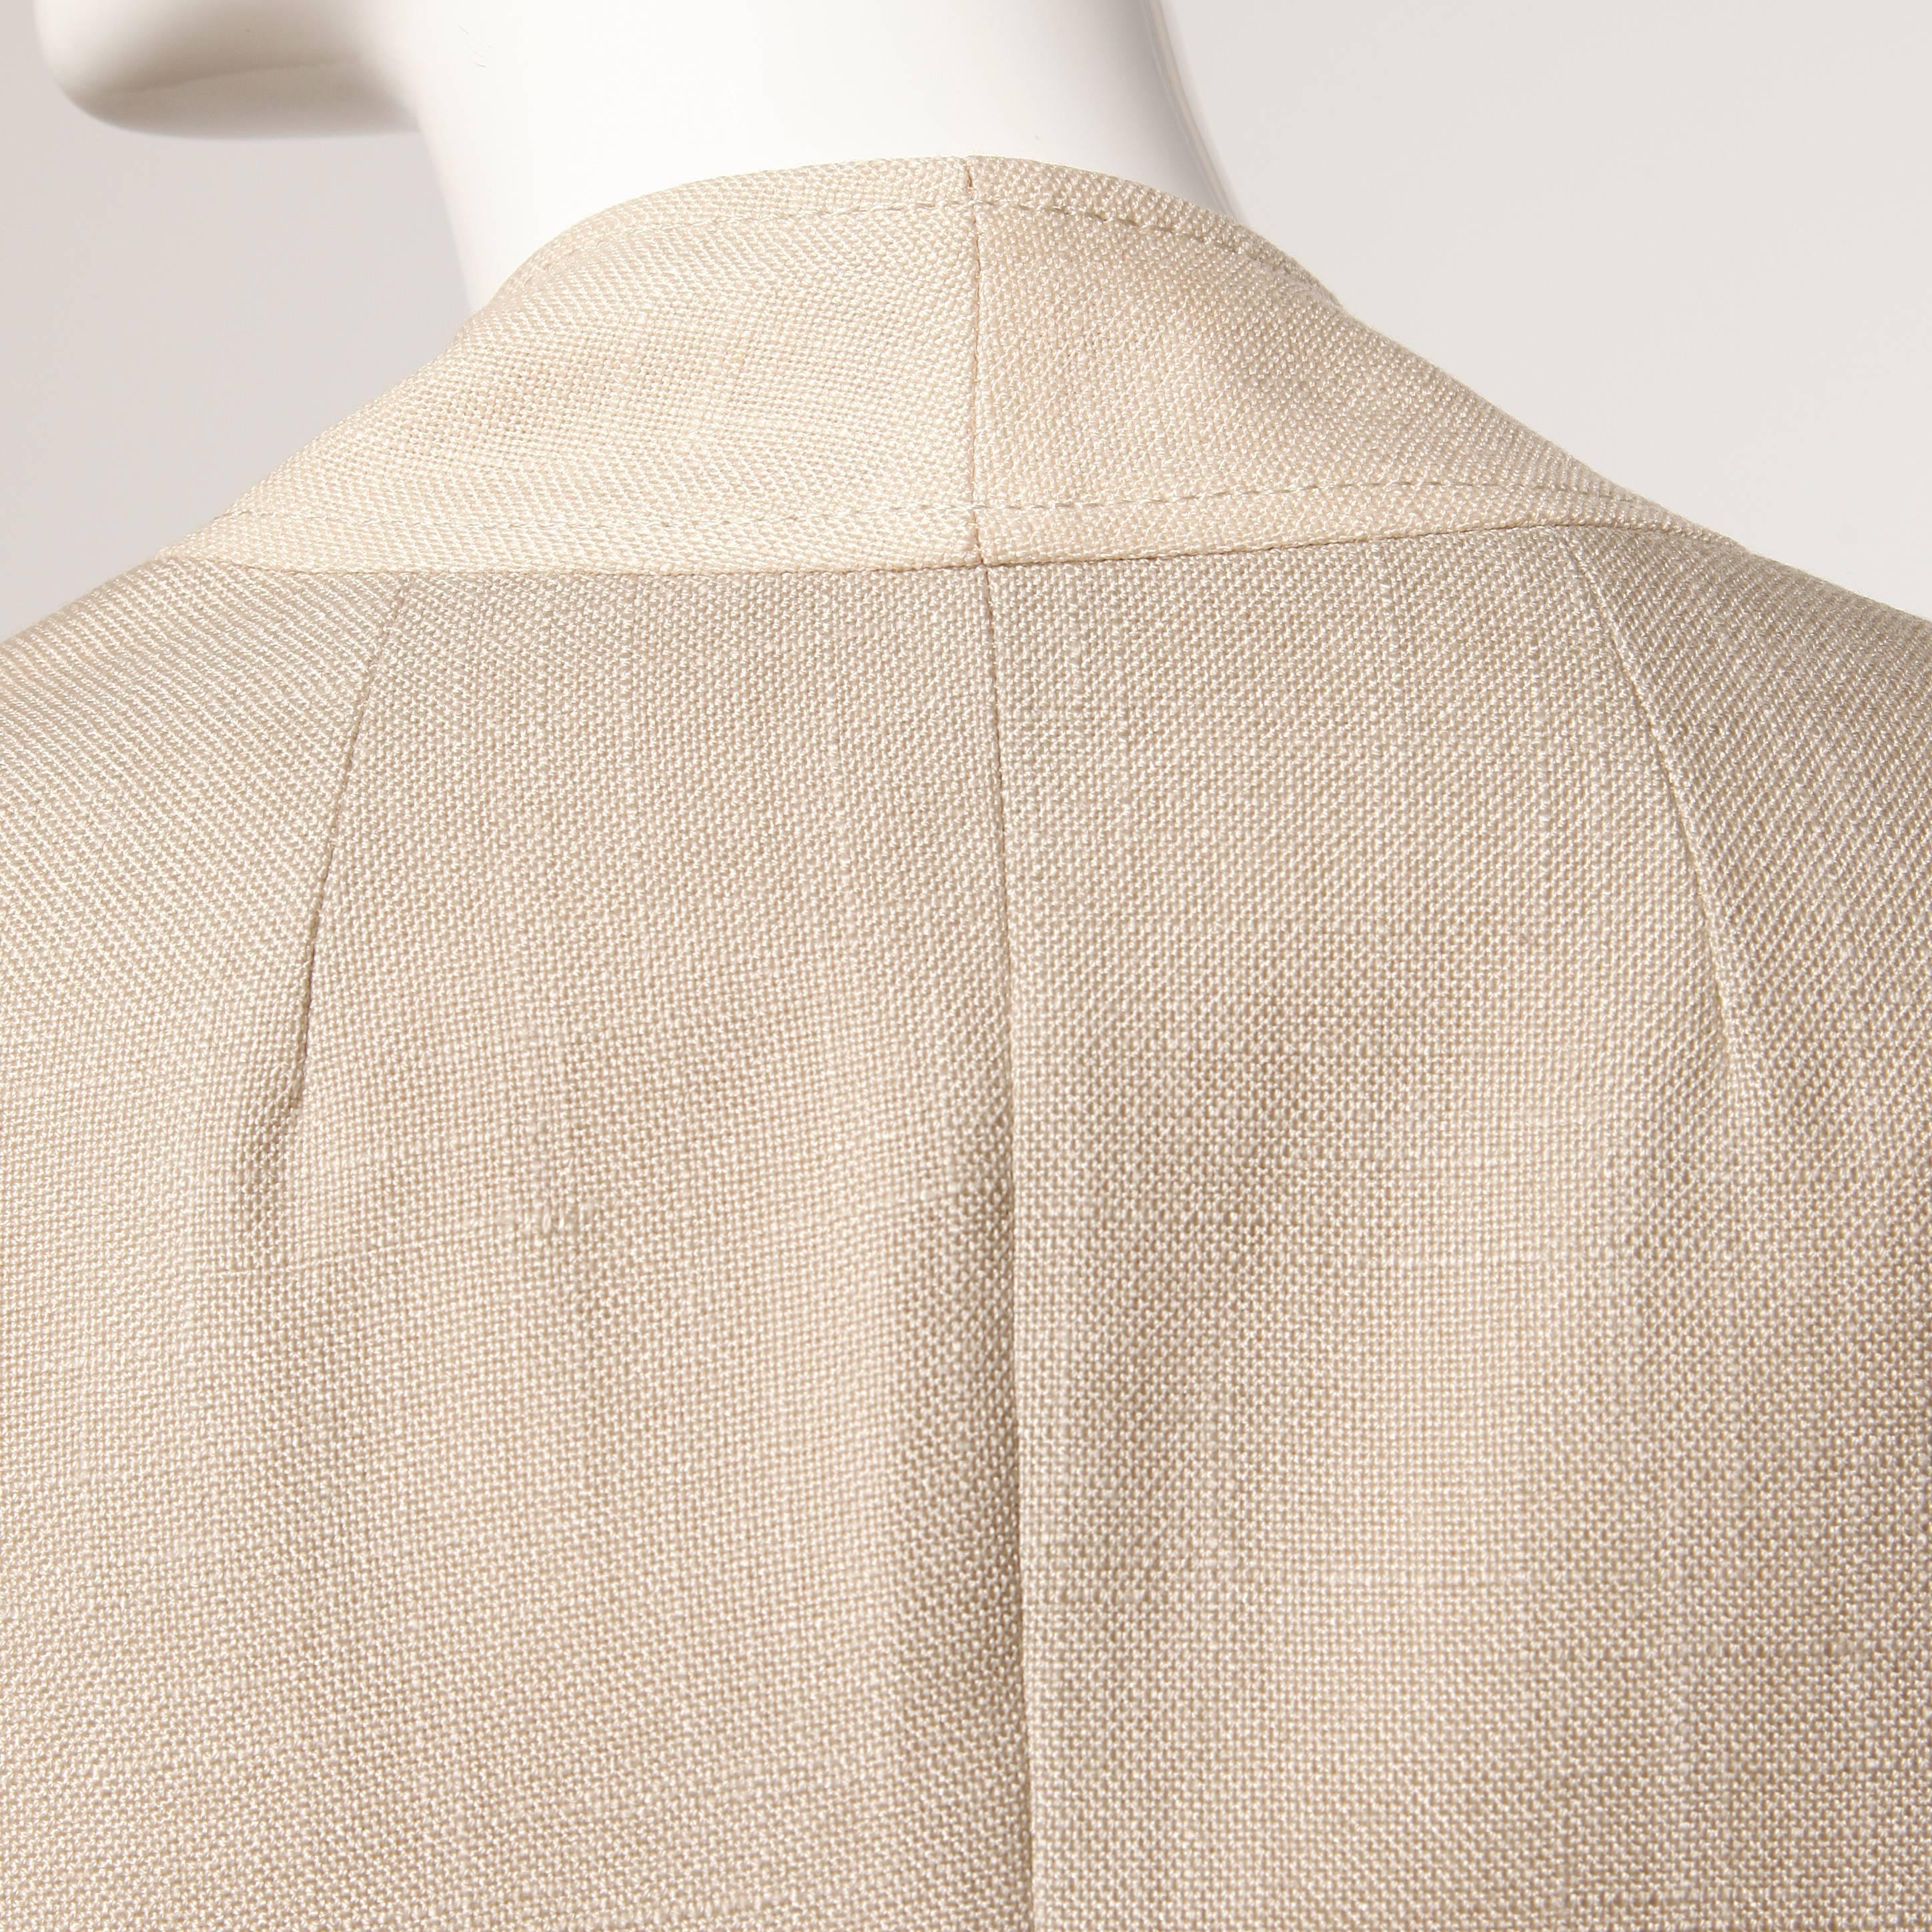 Don Simonelli Vintage Neutral Minimalist Linen Coat and Sash For Sale 1